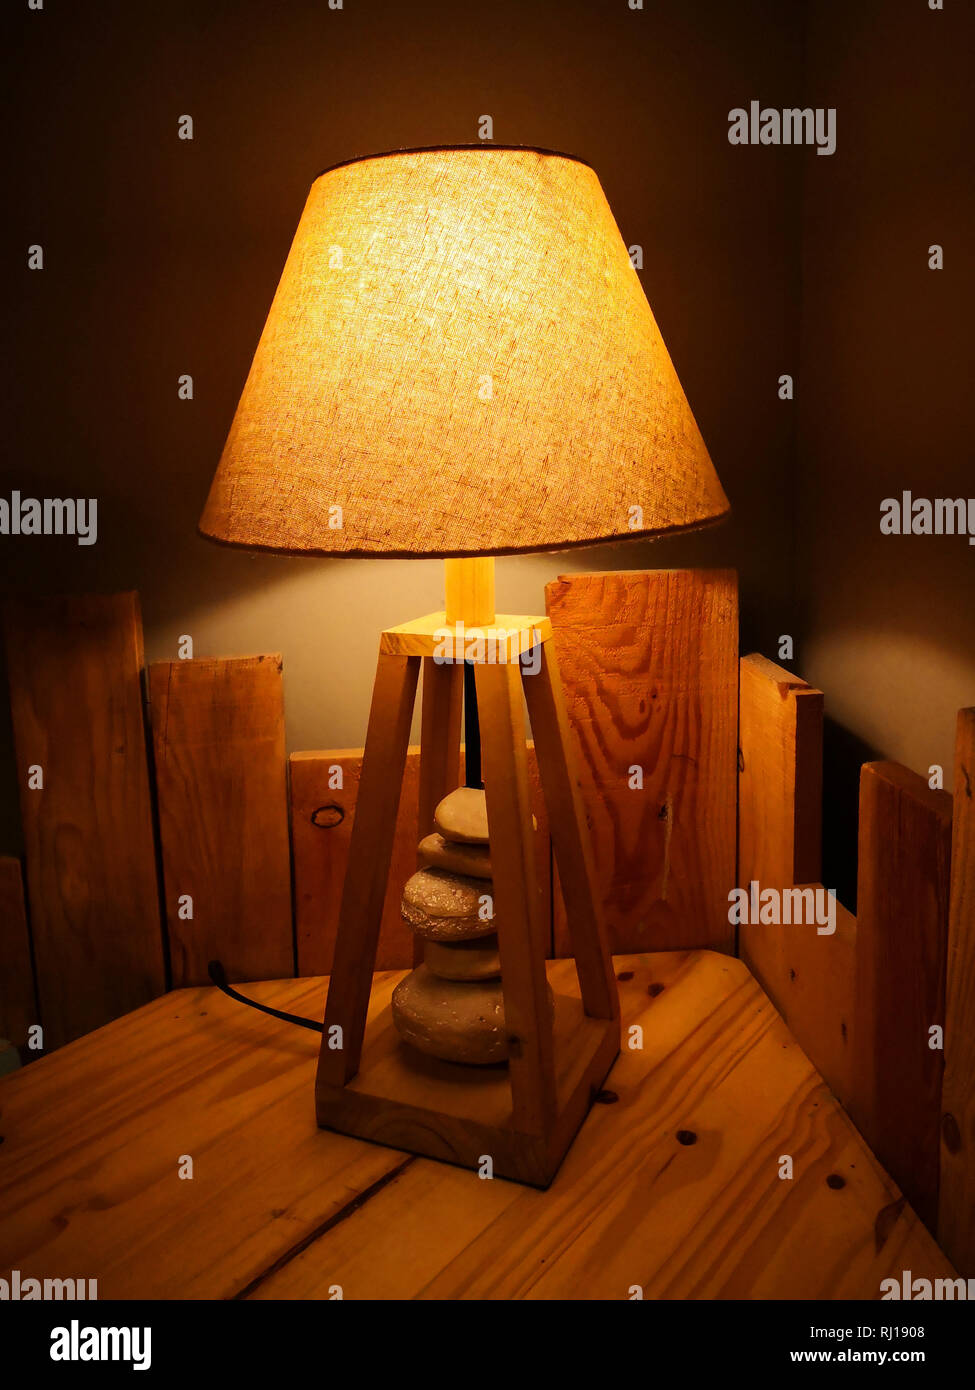 Lampe artistique jaune avec des pierres sur la table en bois Banque D'Images